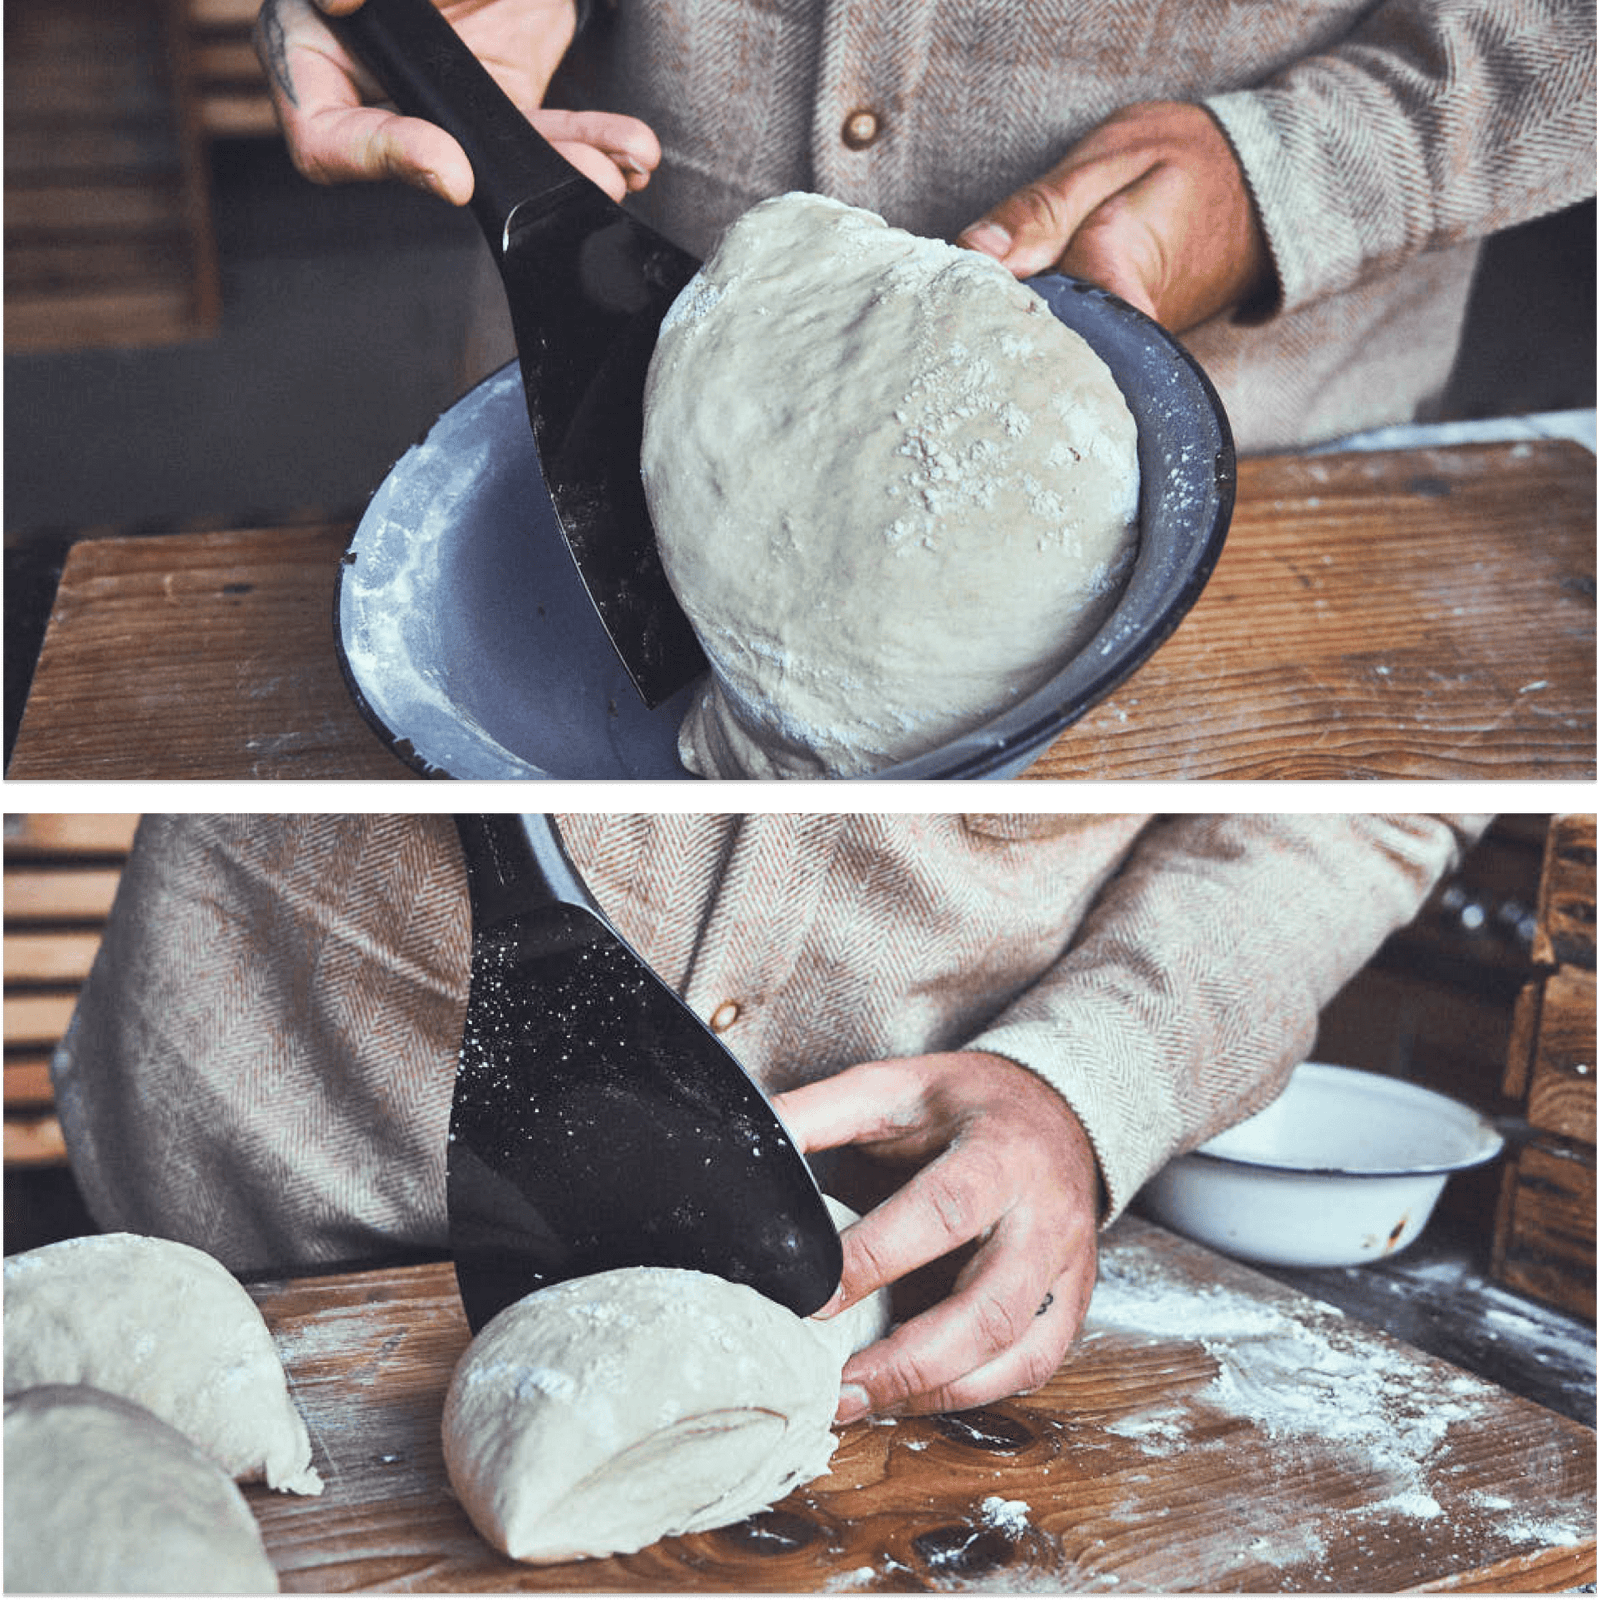 Backstubenszene Pizzateig wird aus Schüssel entnommen und mit der Kante vom Teigspachtel zerteilt